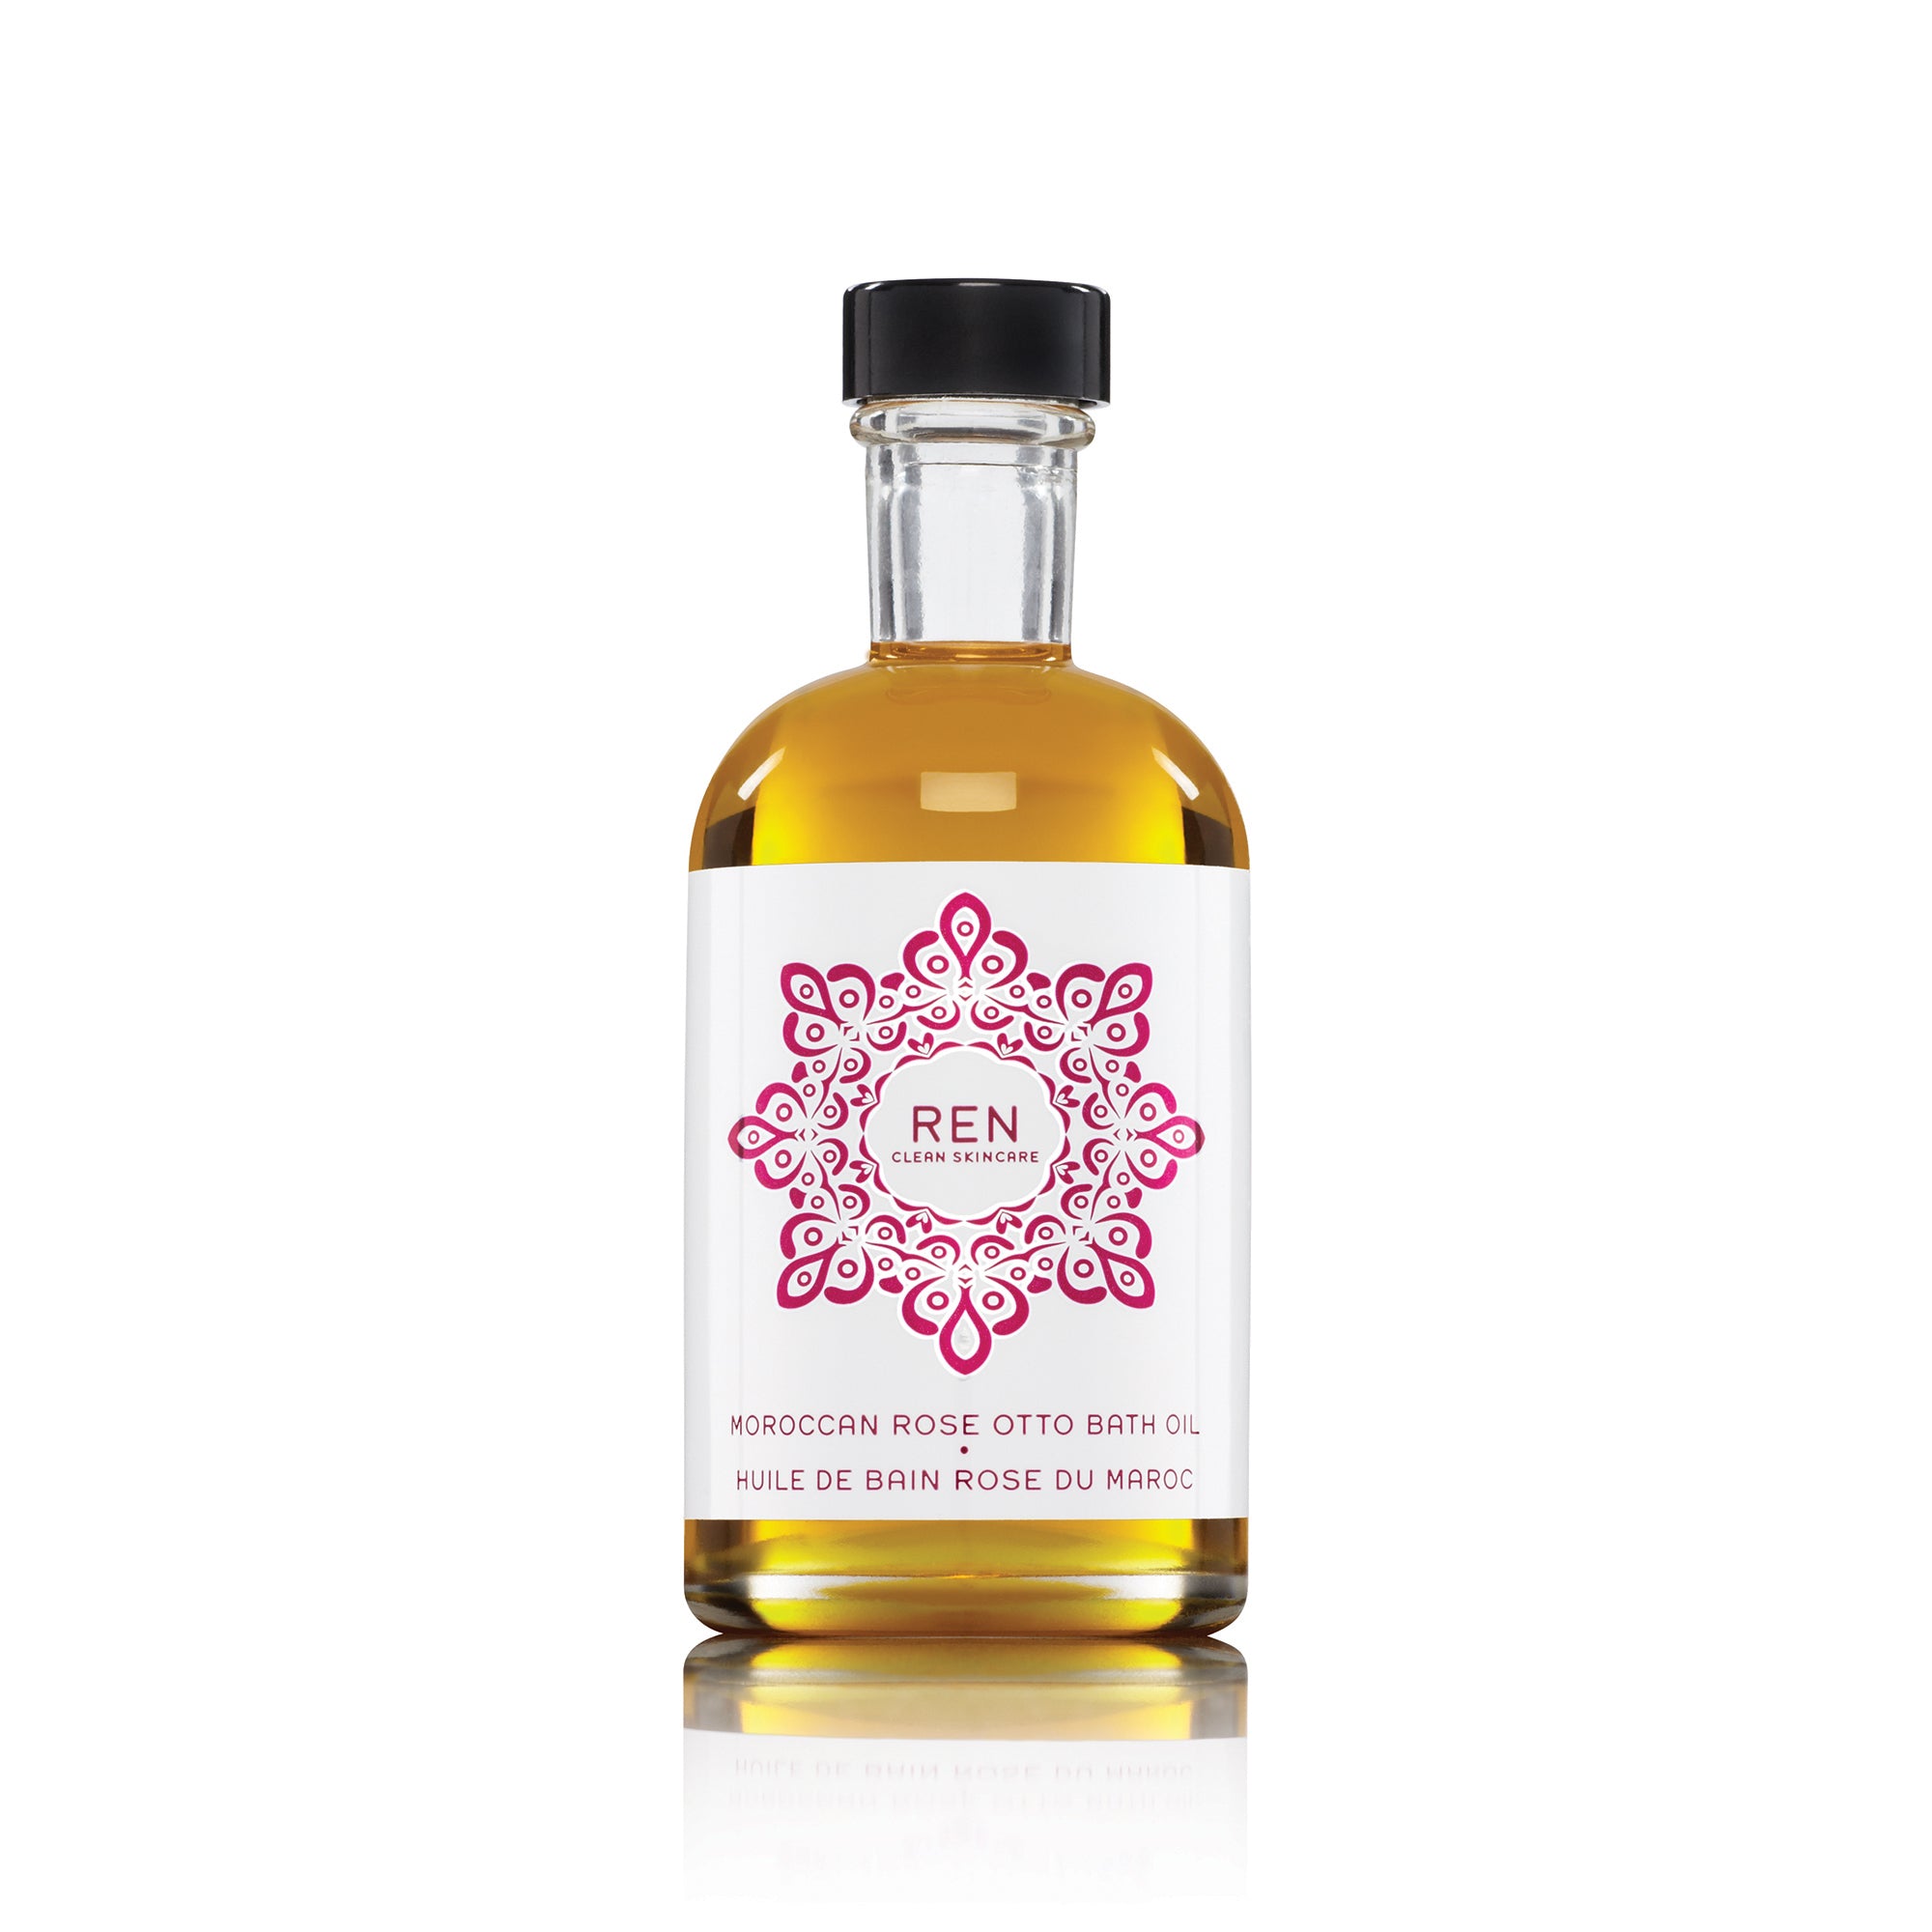 Moroccan Rose Bath Oil